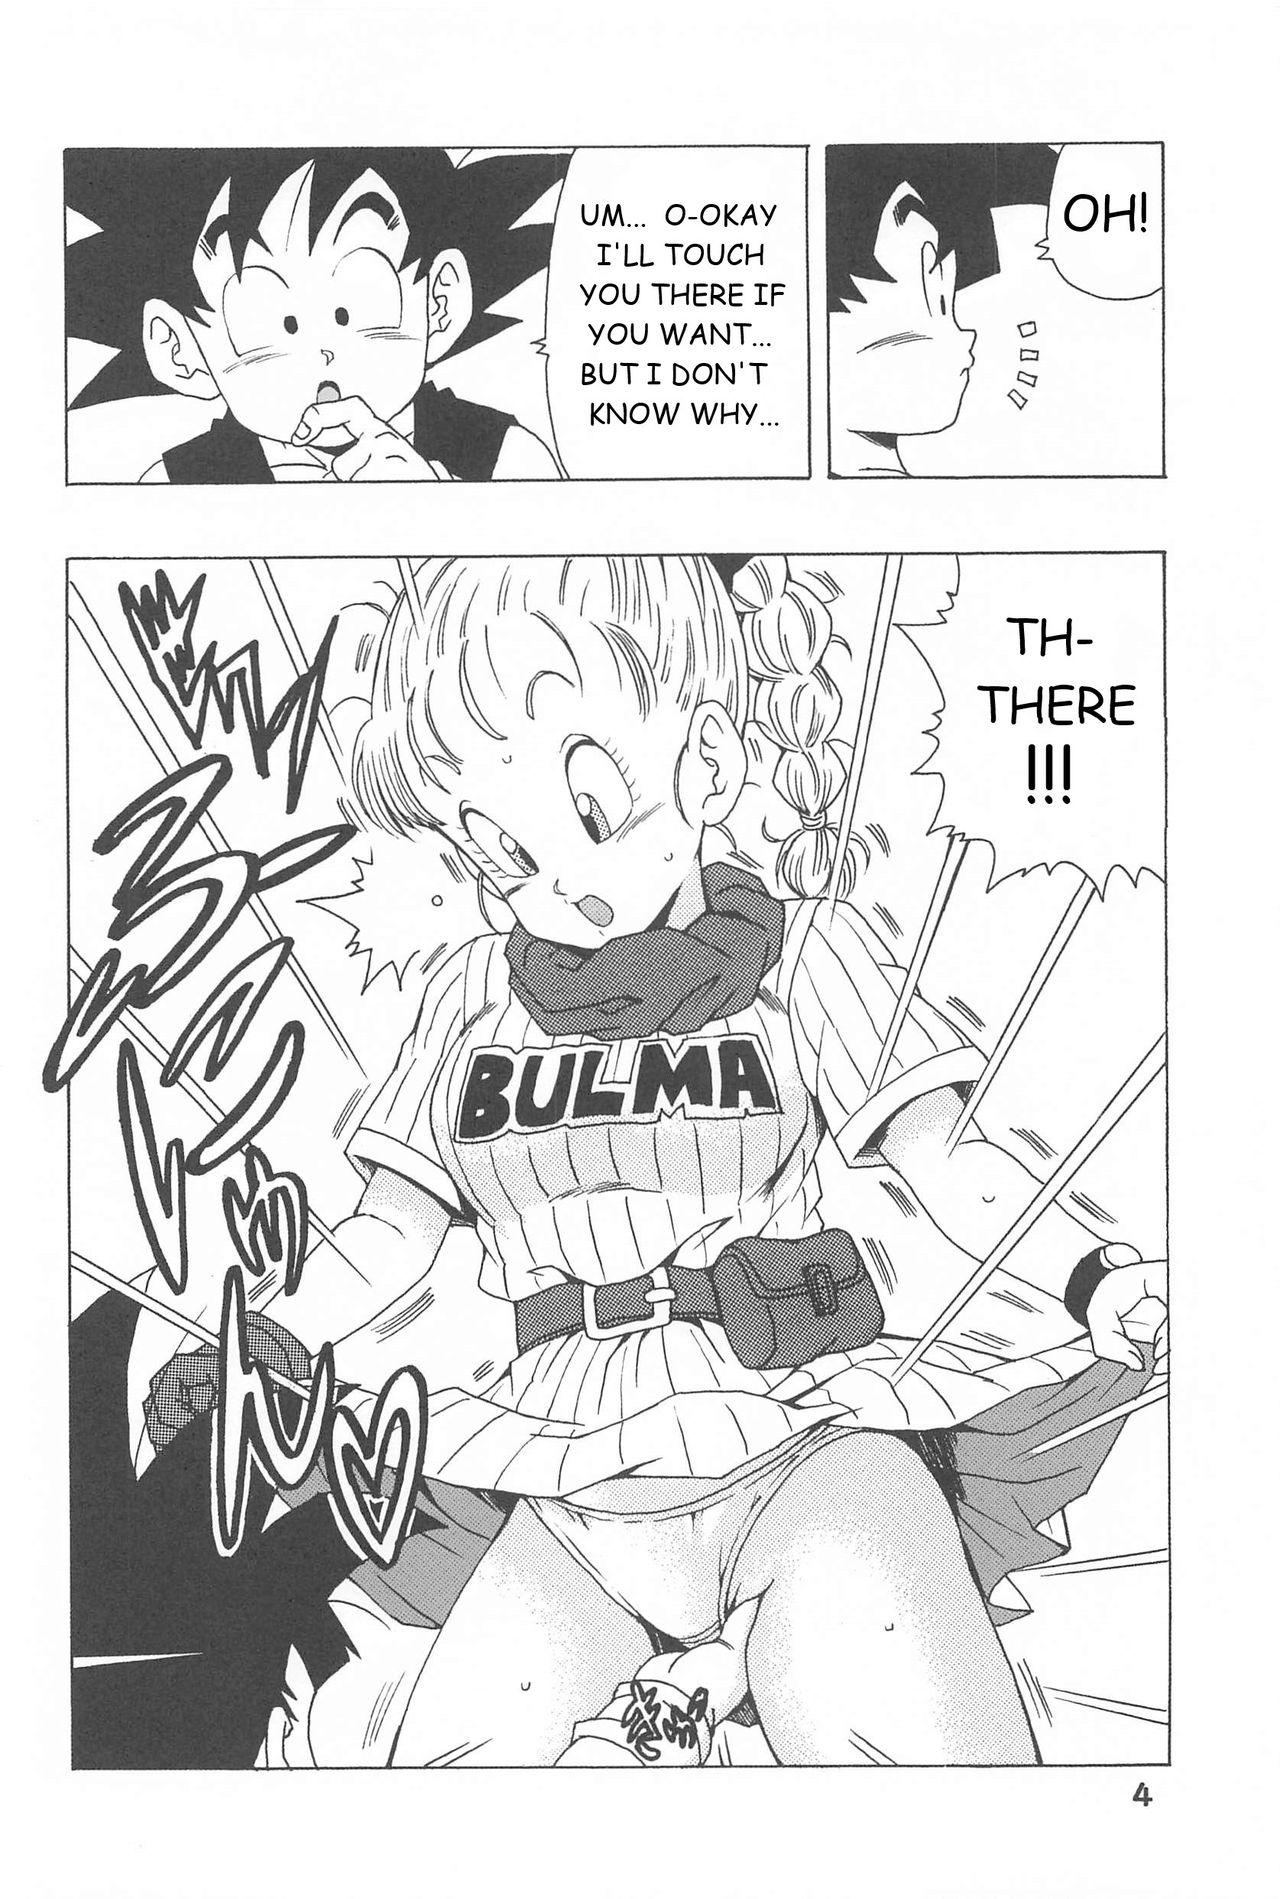 Women Sucking Bulma no Saikyou e no Michi - Dragon ball Real Sex - Page 4